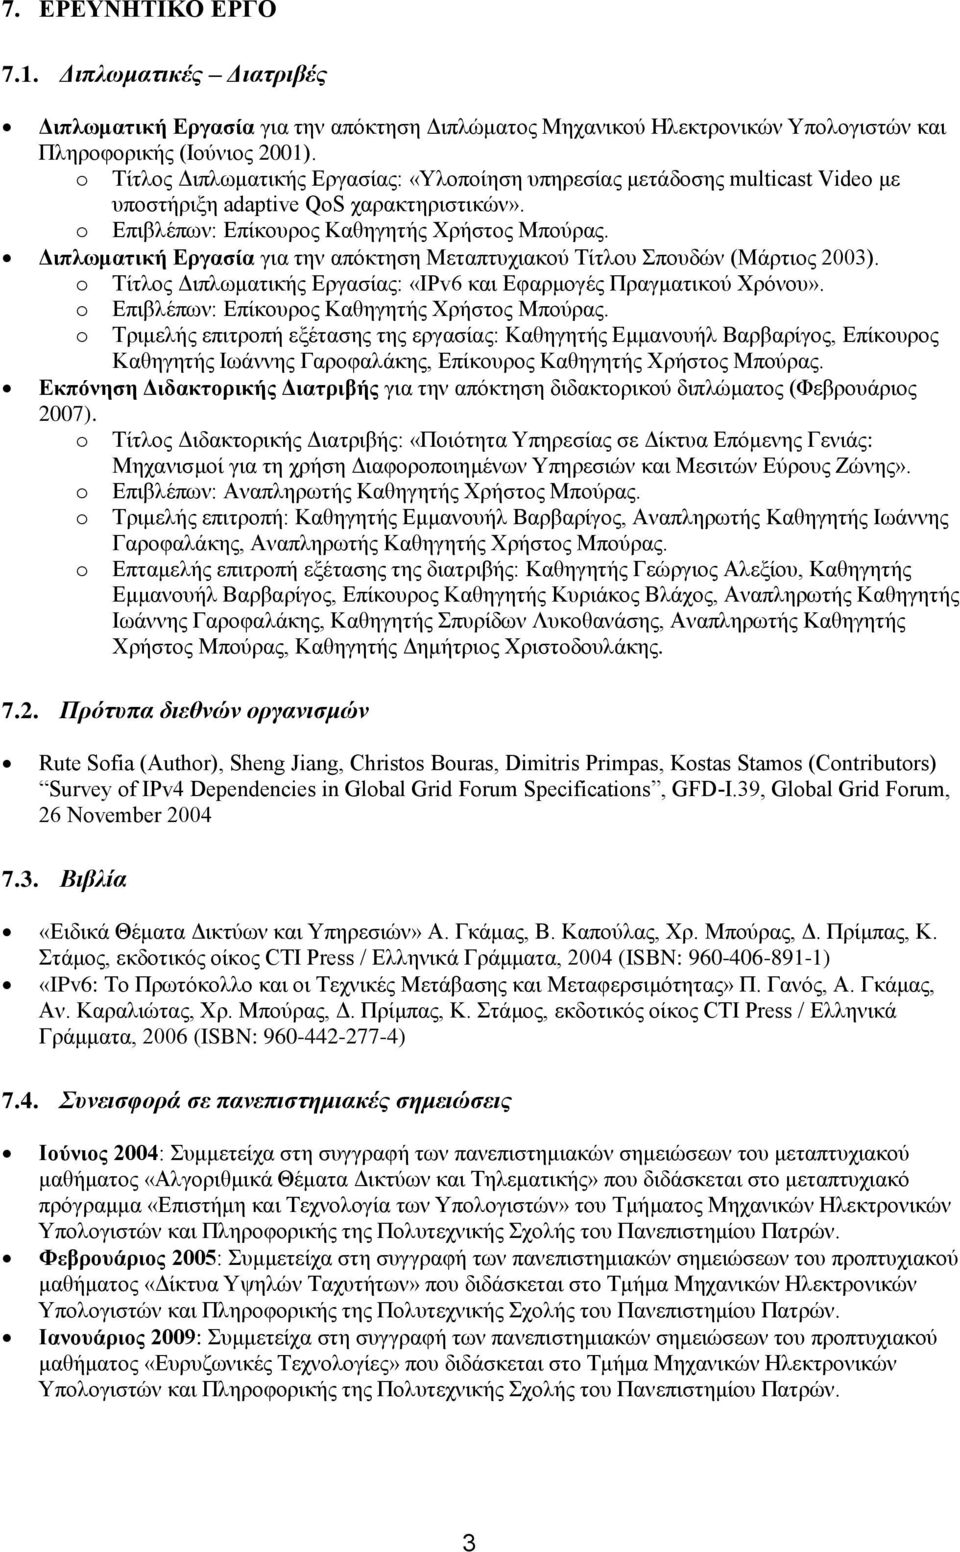 Διπλωματική Εργασία για την απόκτηση Μεταπτυχιακού Τίτλου Σπουδών (Μάρτιος 2003). o Τίτλος Διπλωματικής Εργασίας: «ΙPv6 και Εφαρμογές Πραγματικού Χρόνου».